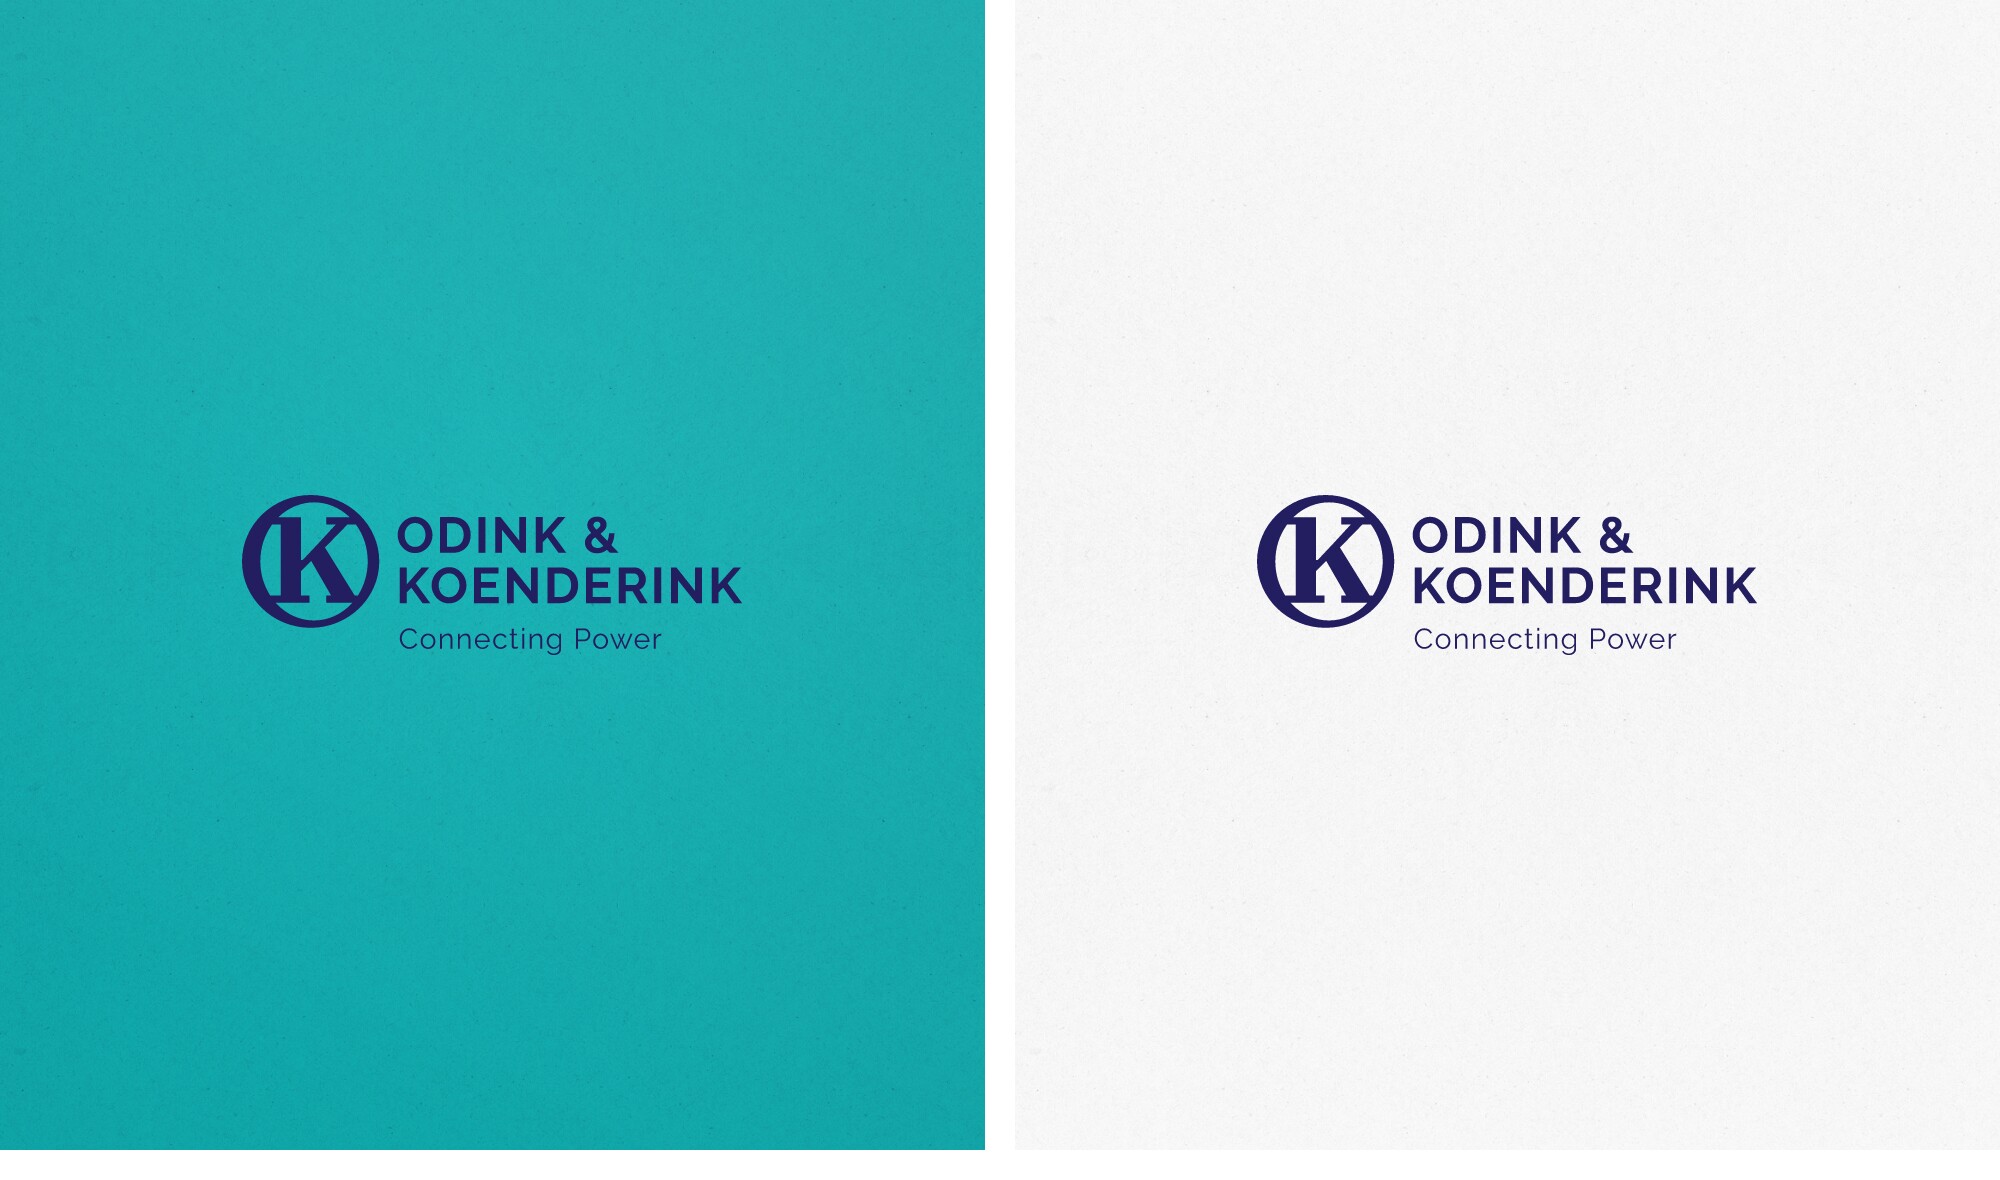 Odink & Koenderink Logo kleur opties